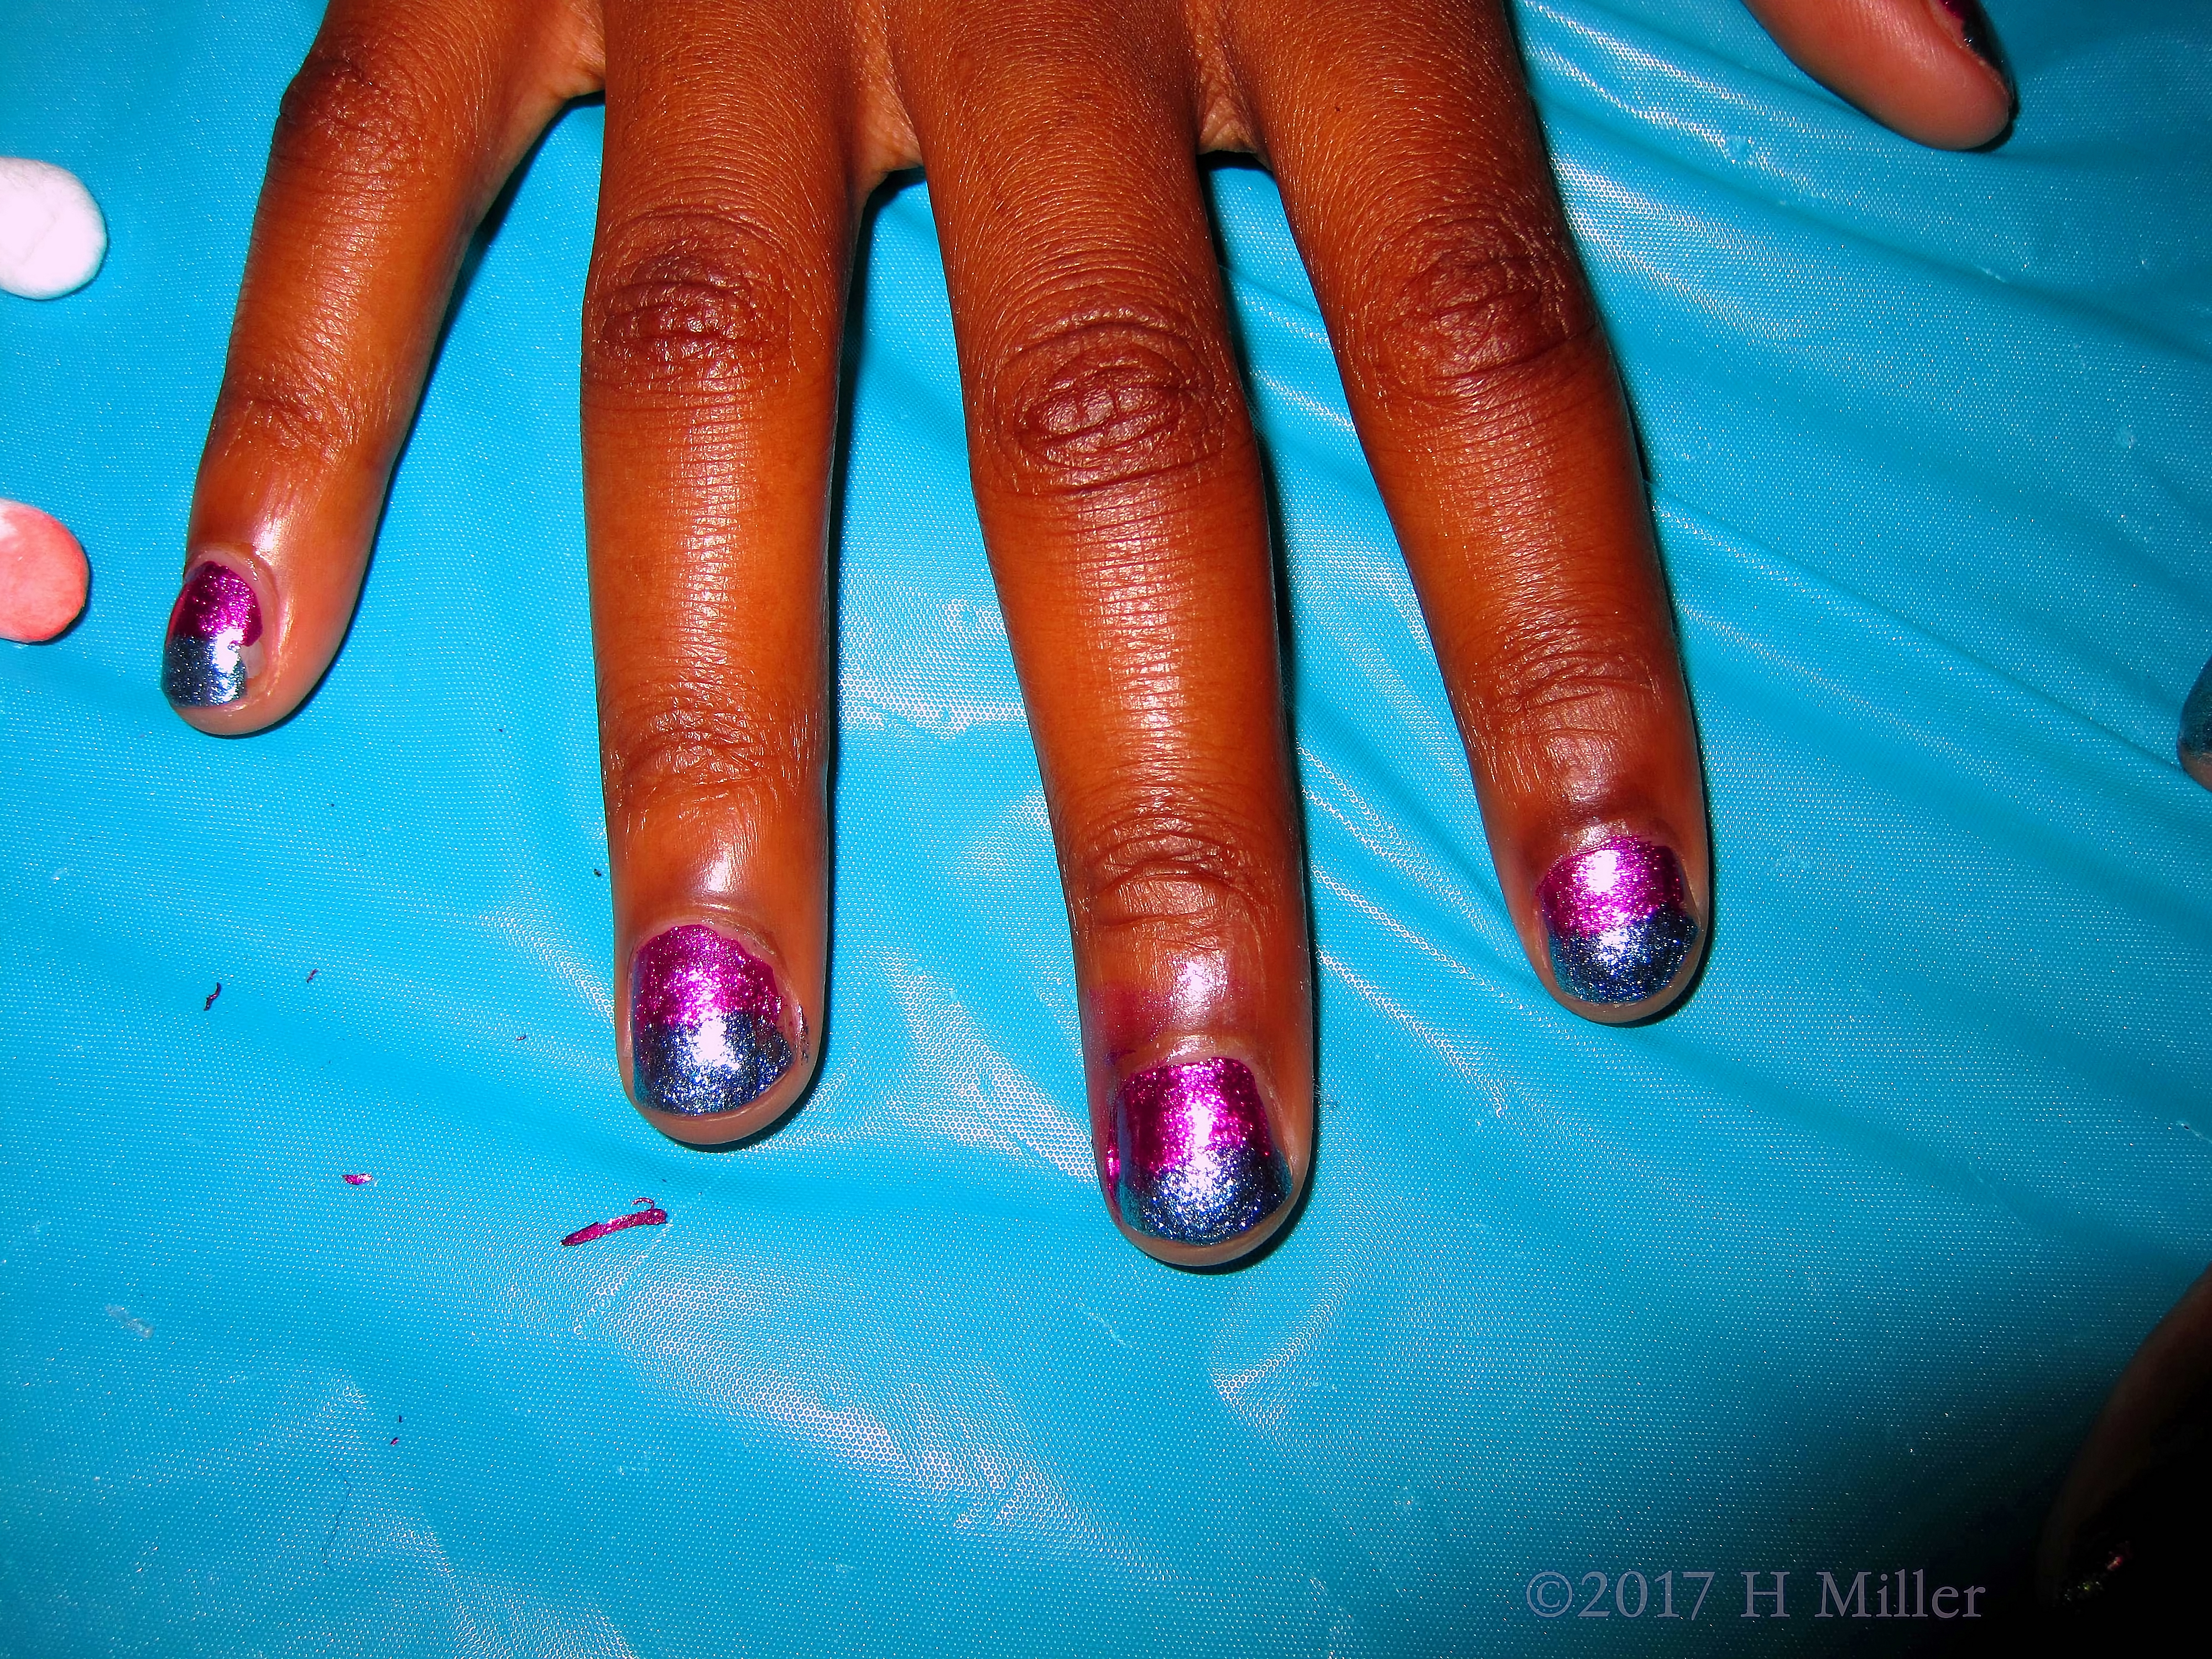 What A Pretty Purple And Blue Ombre Mini Manicure. 4